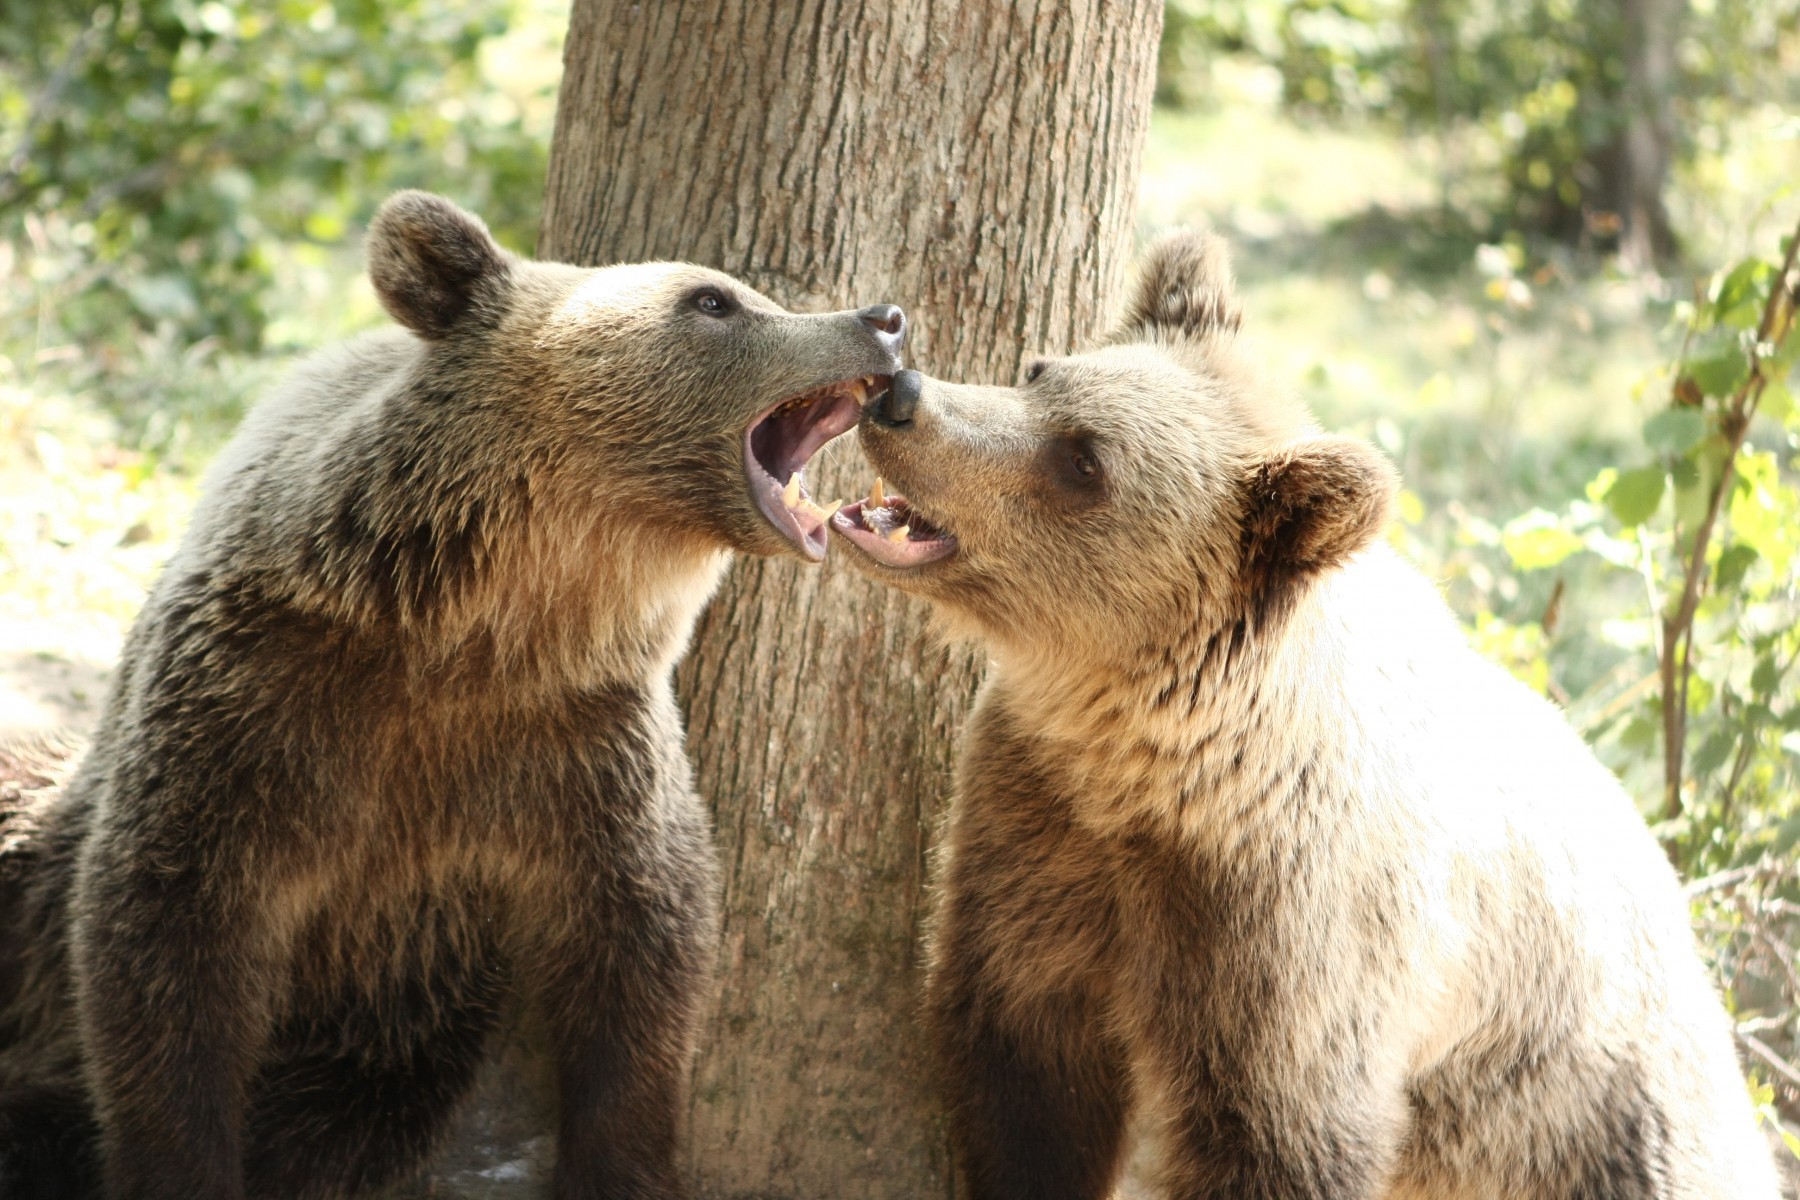 To bjørne bjørne slås for sjov. De er blevet reddet fra dårlige forhold i fangenskab og lever nu i bjørnereservatet, vi støtter i Rumænien.